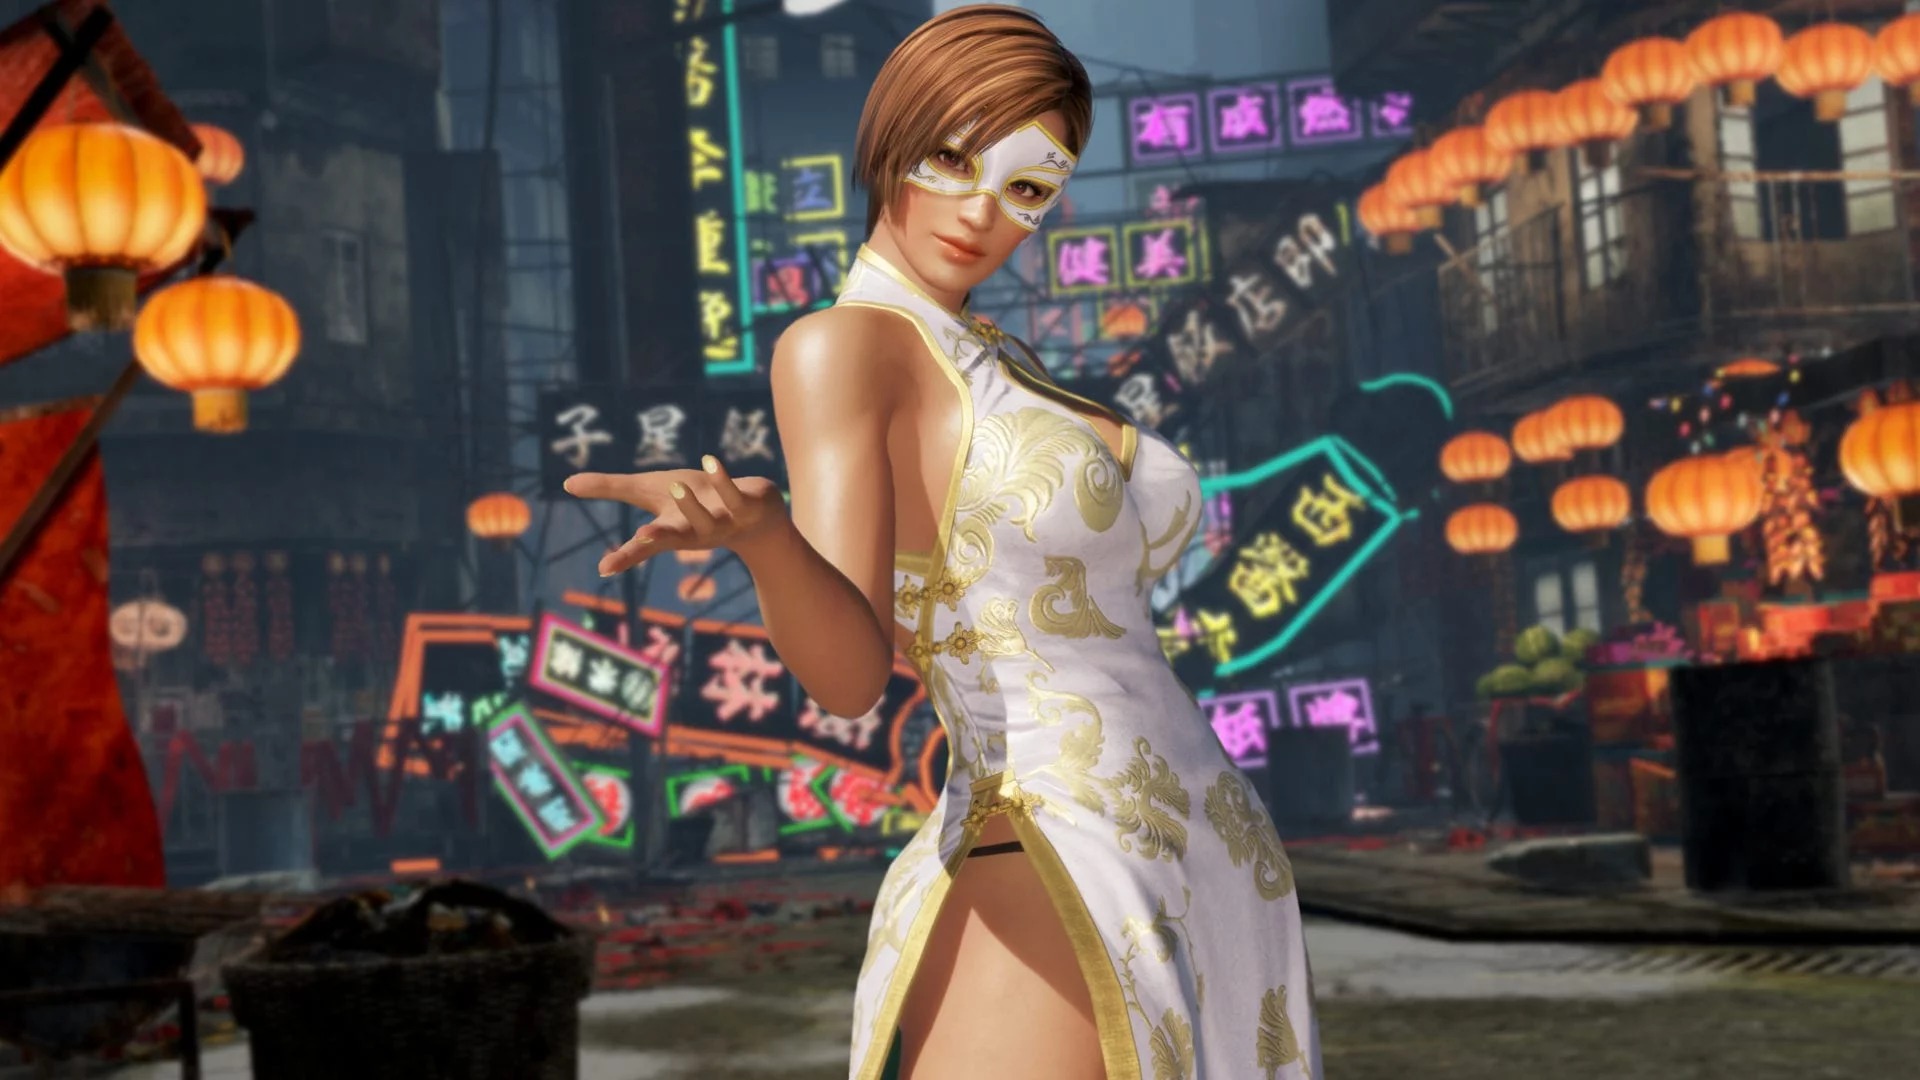 我已經好了 《生死格鬥6》“誘惑旗袍”DLC截圖展示